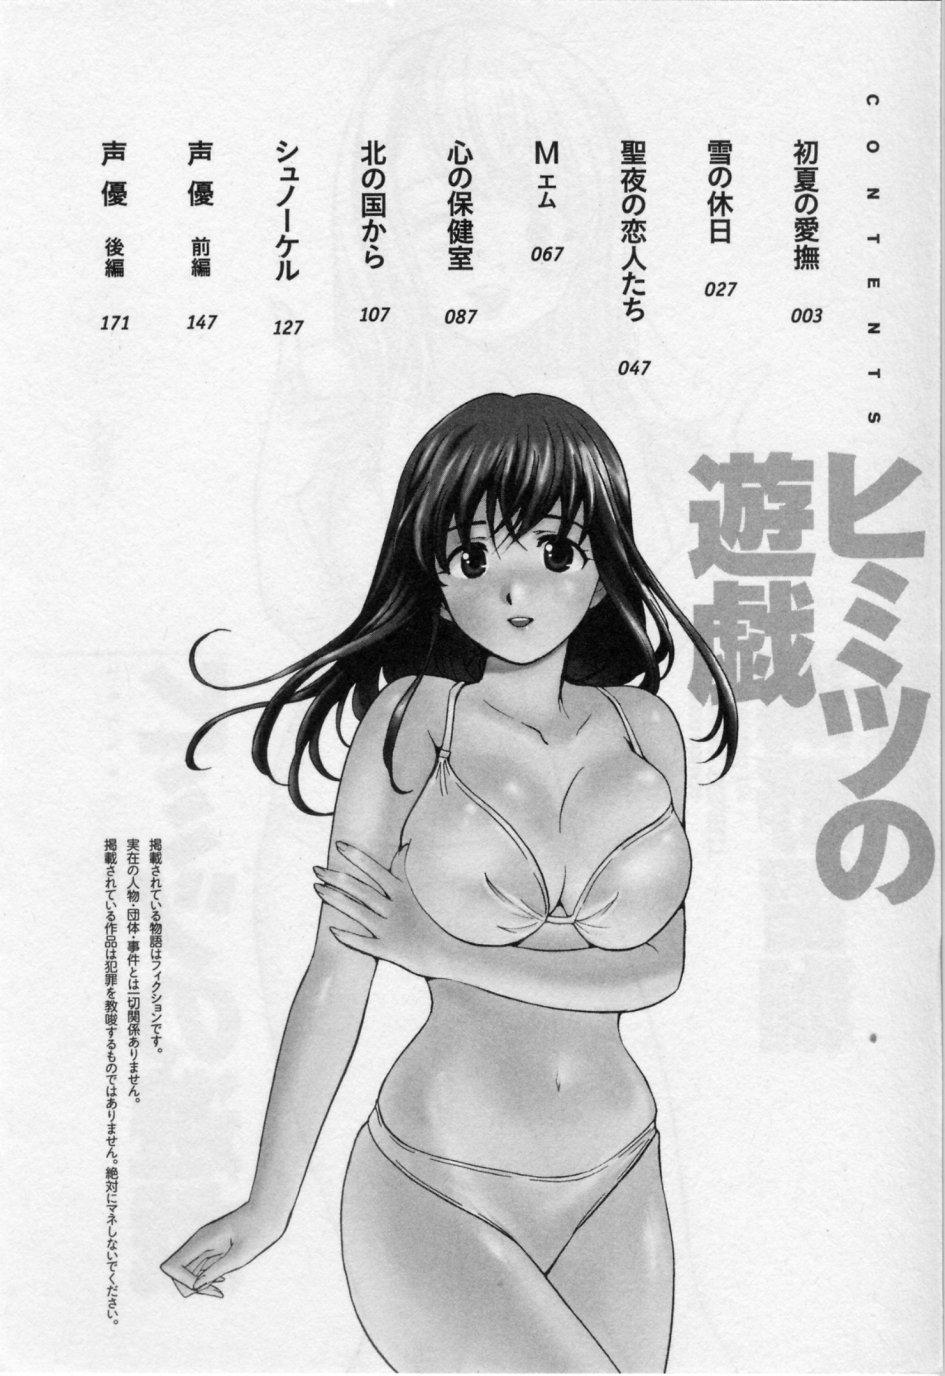 Naked Sex Himitsu no Yuugi Closeups - Page 4